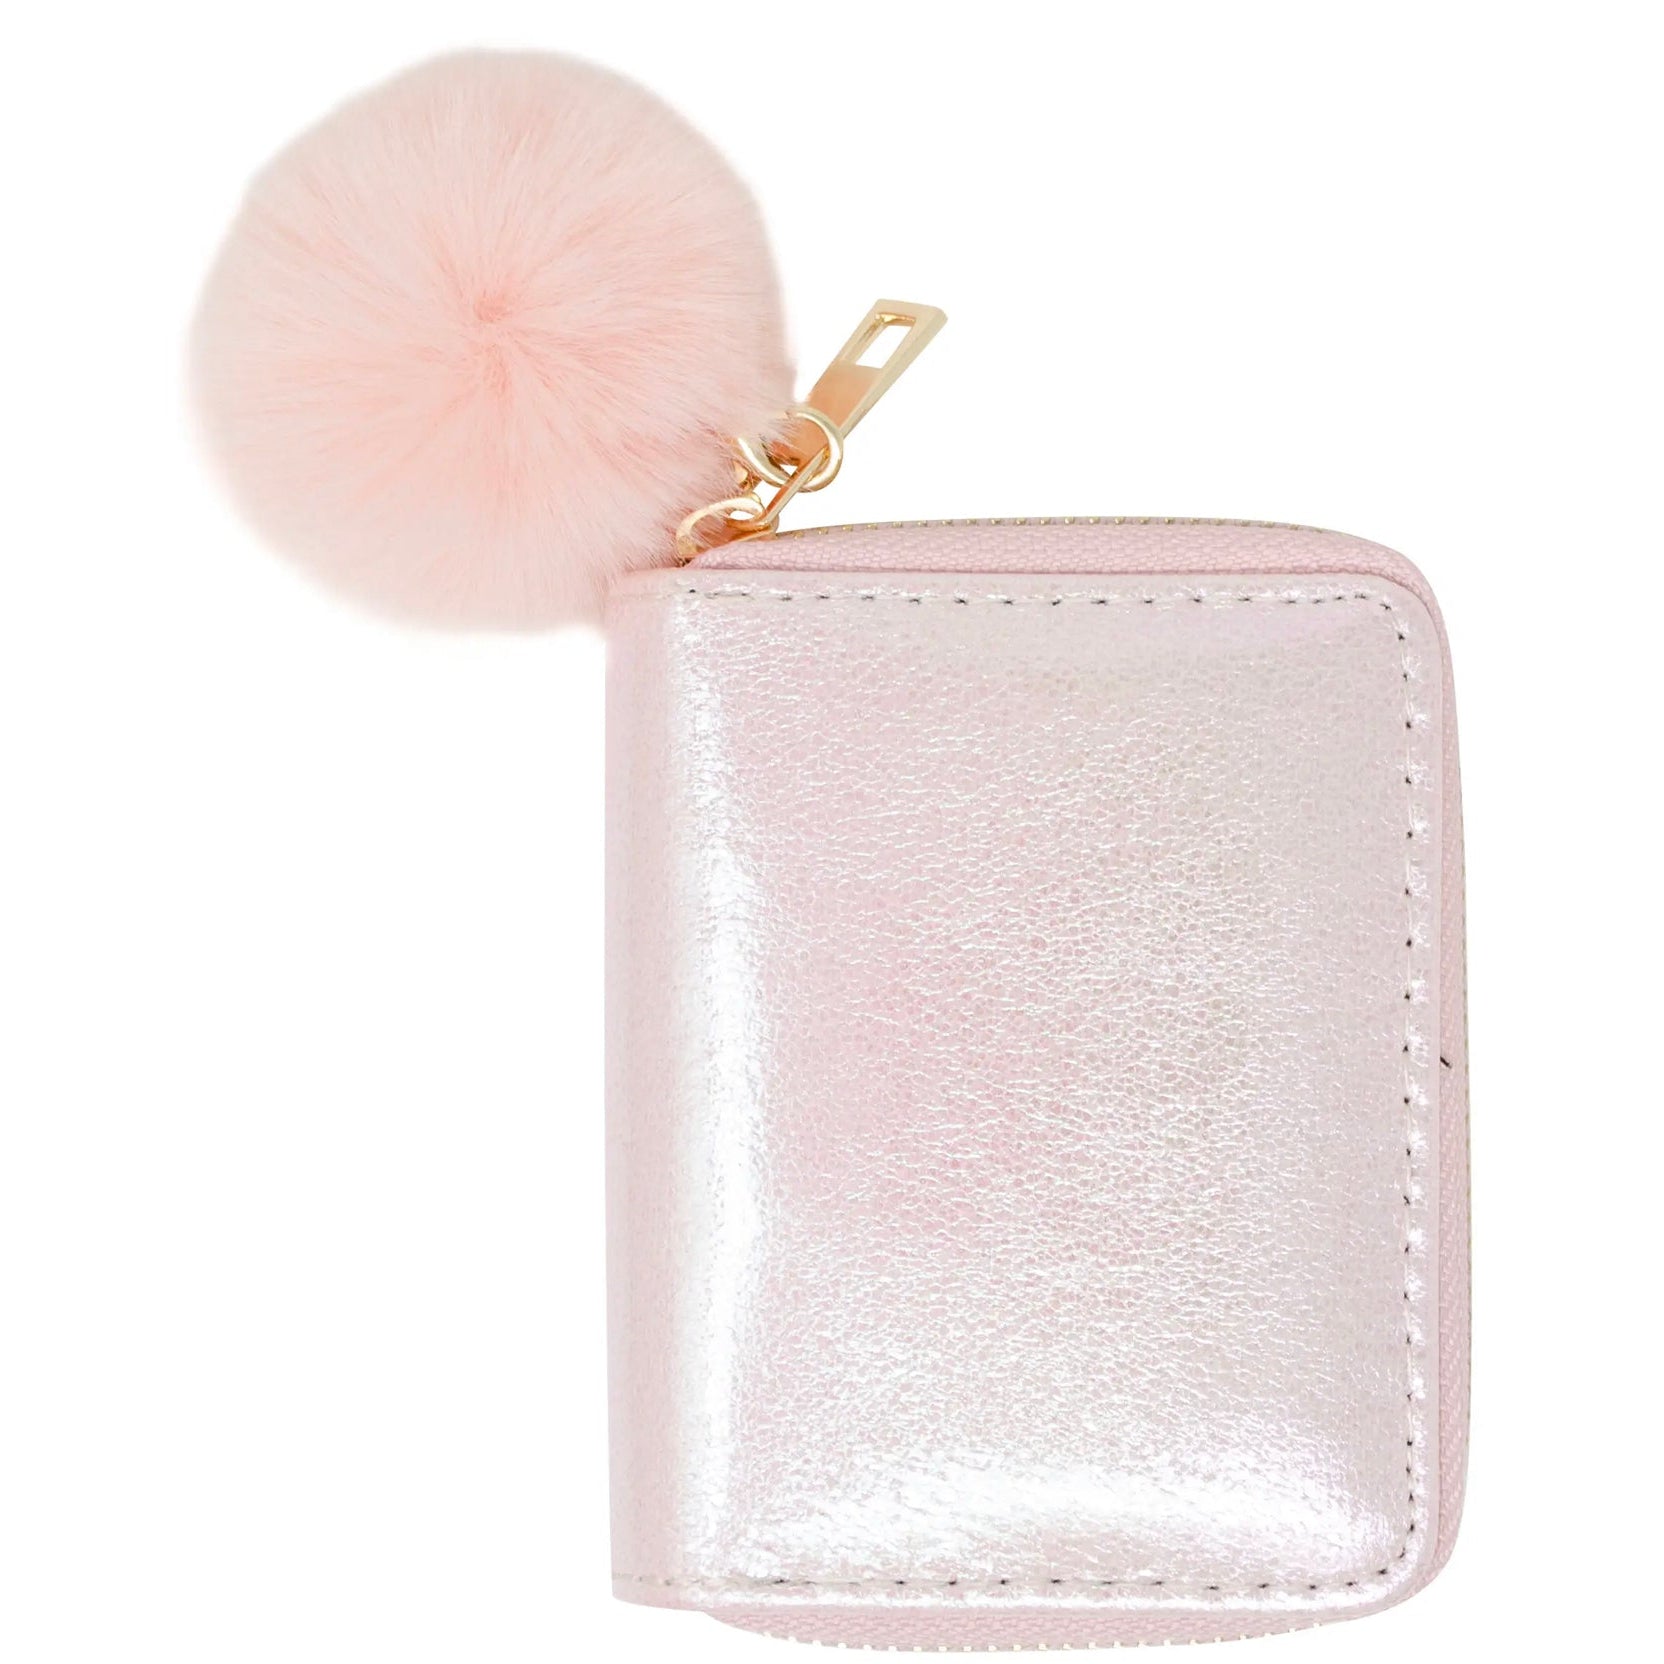 Zomi Gems - Tiny Treat Shiny Wallet